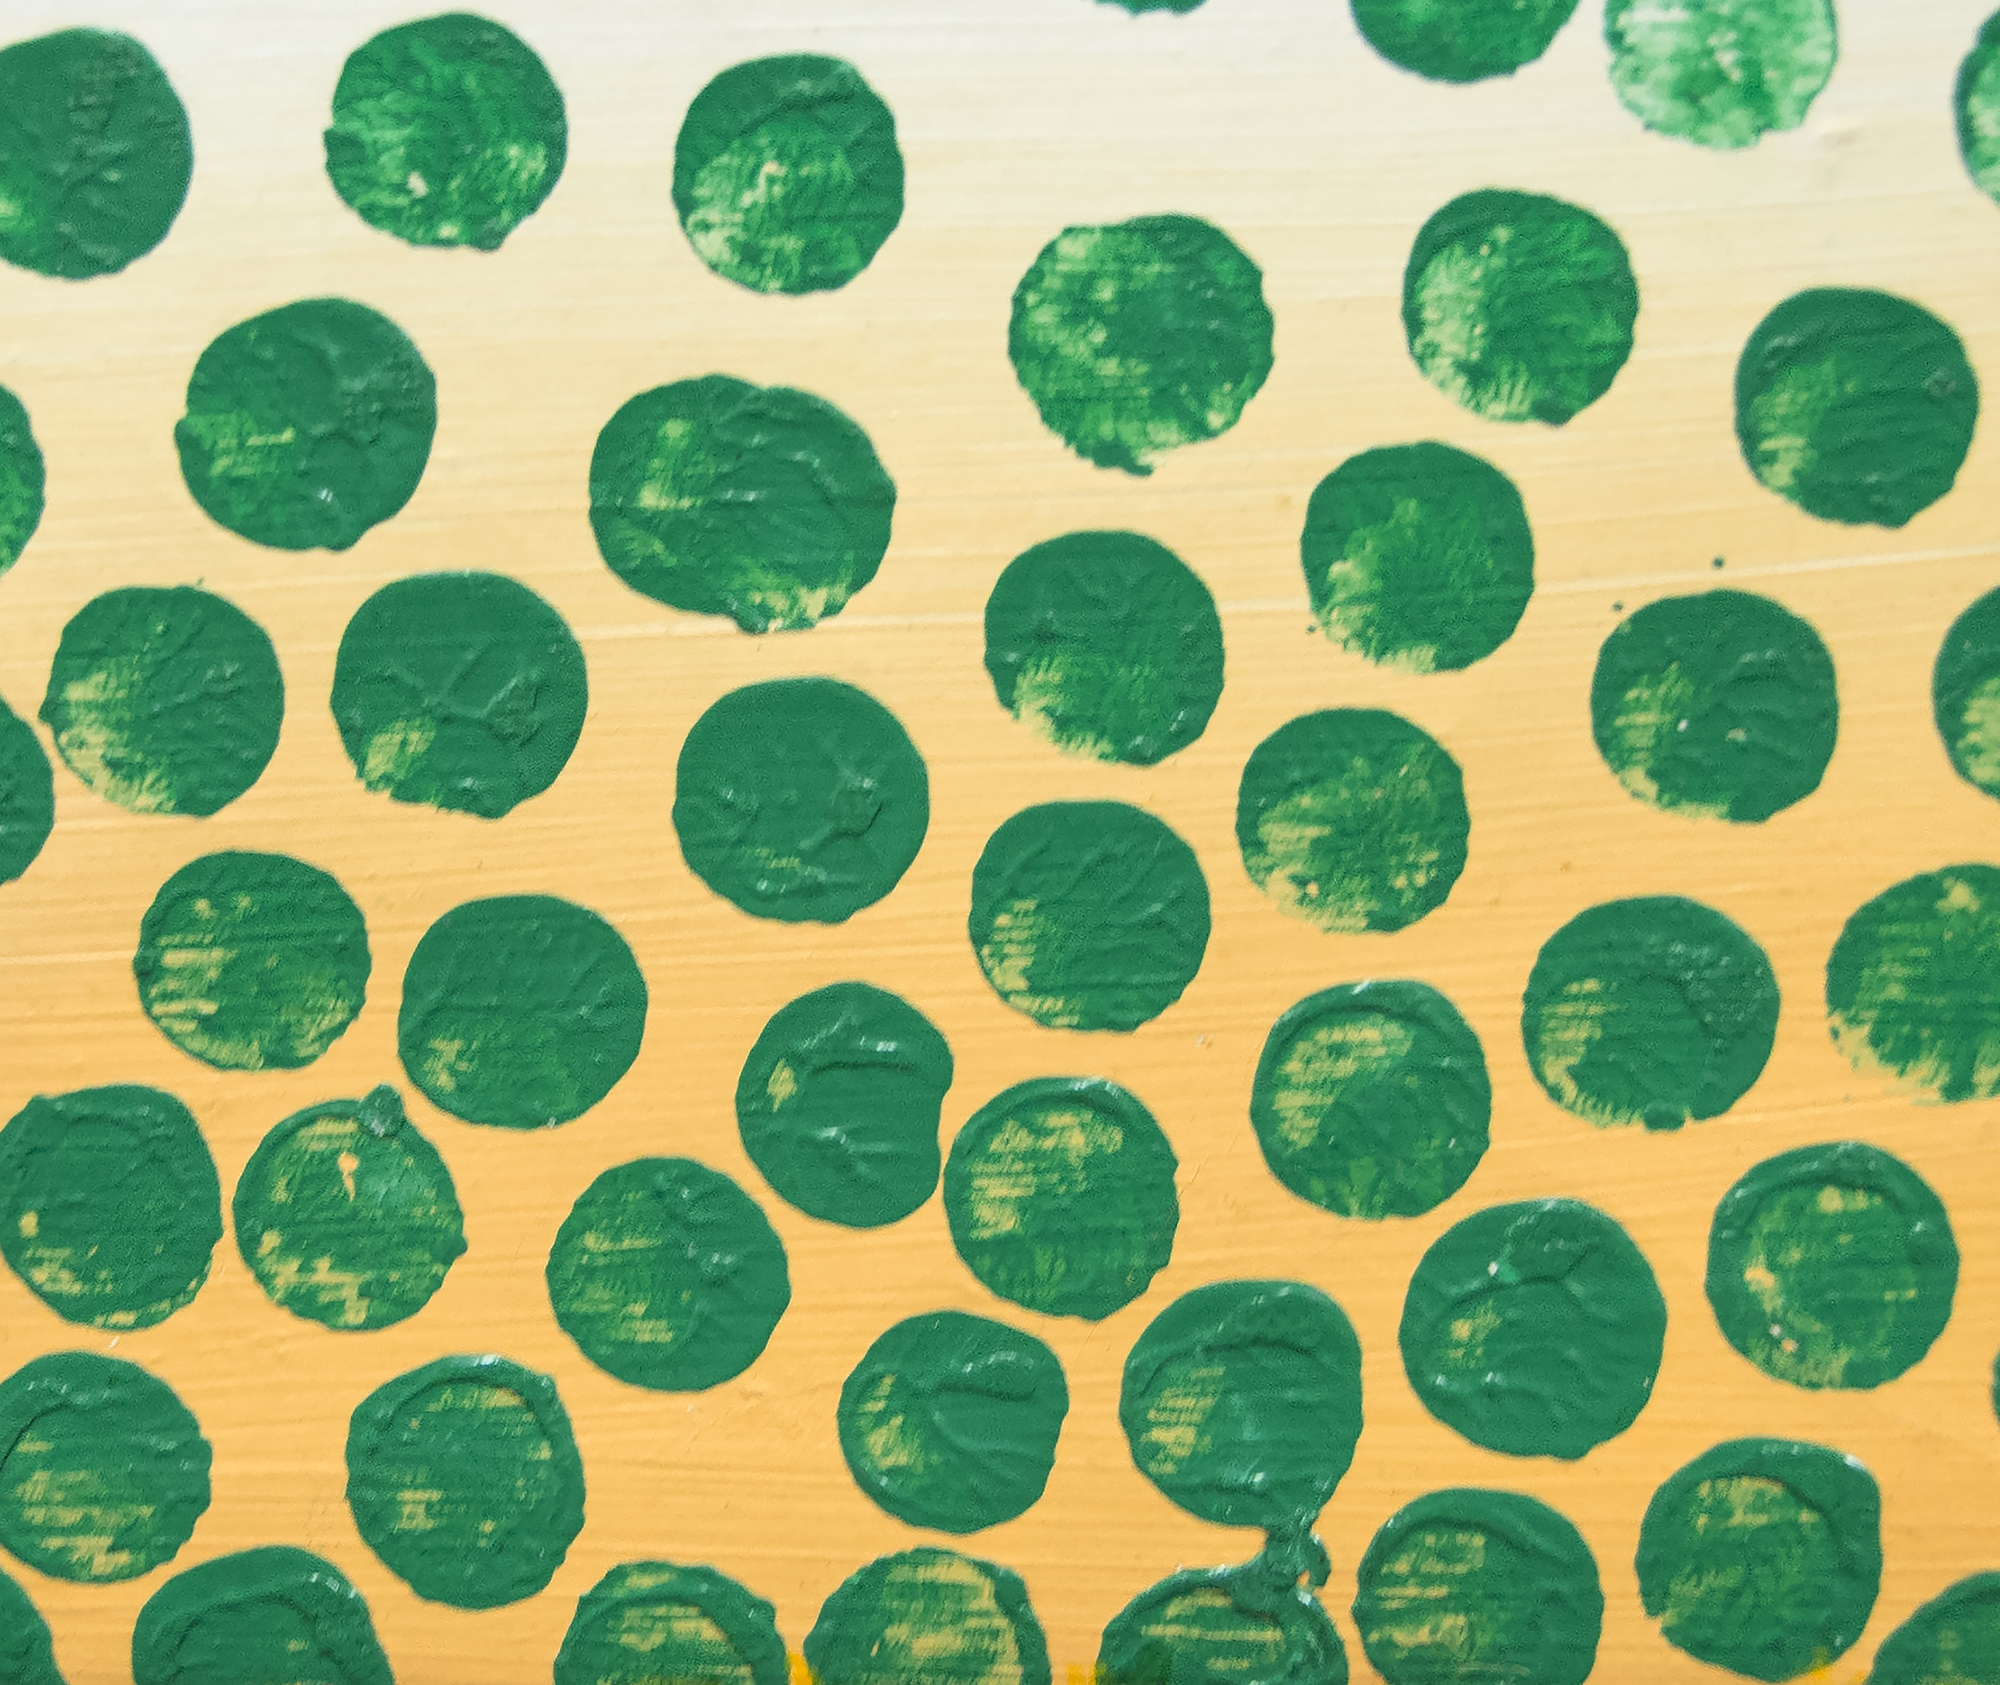 WOJCIECH FANGOR - Green Points - oil on canvas - 52 7/8 x 33 1/2 in.